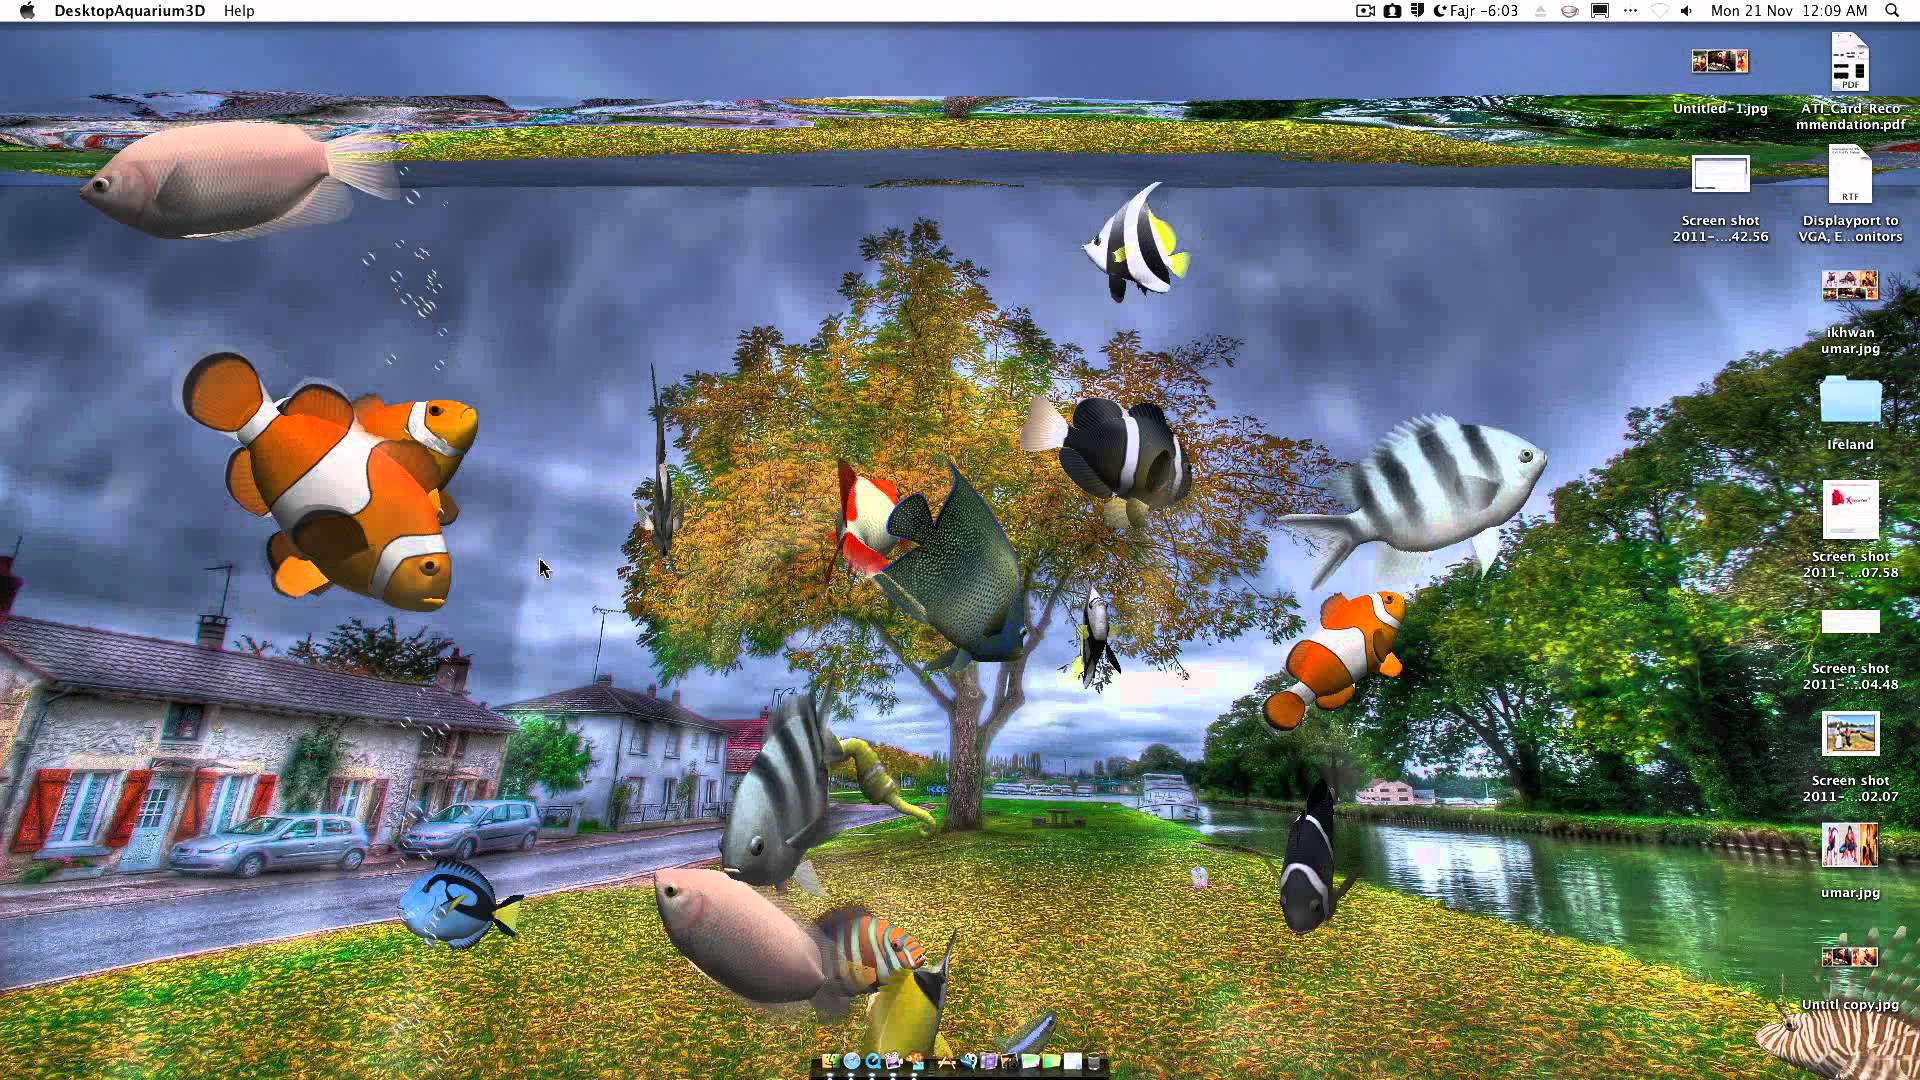 Desktop Aquarium 3D Live Wallpaper on Imac - YouTube